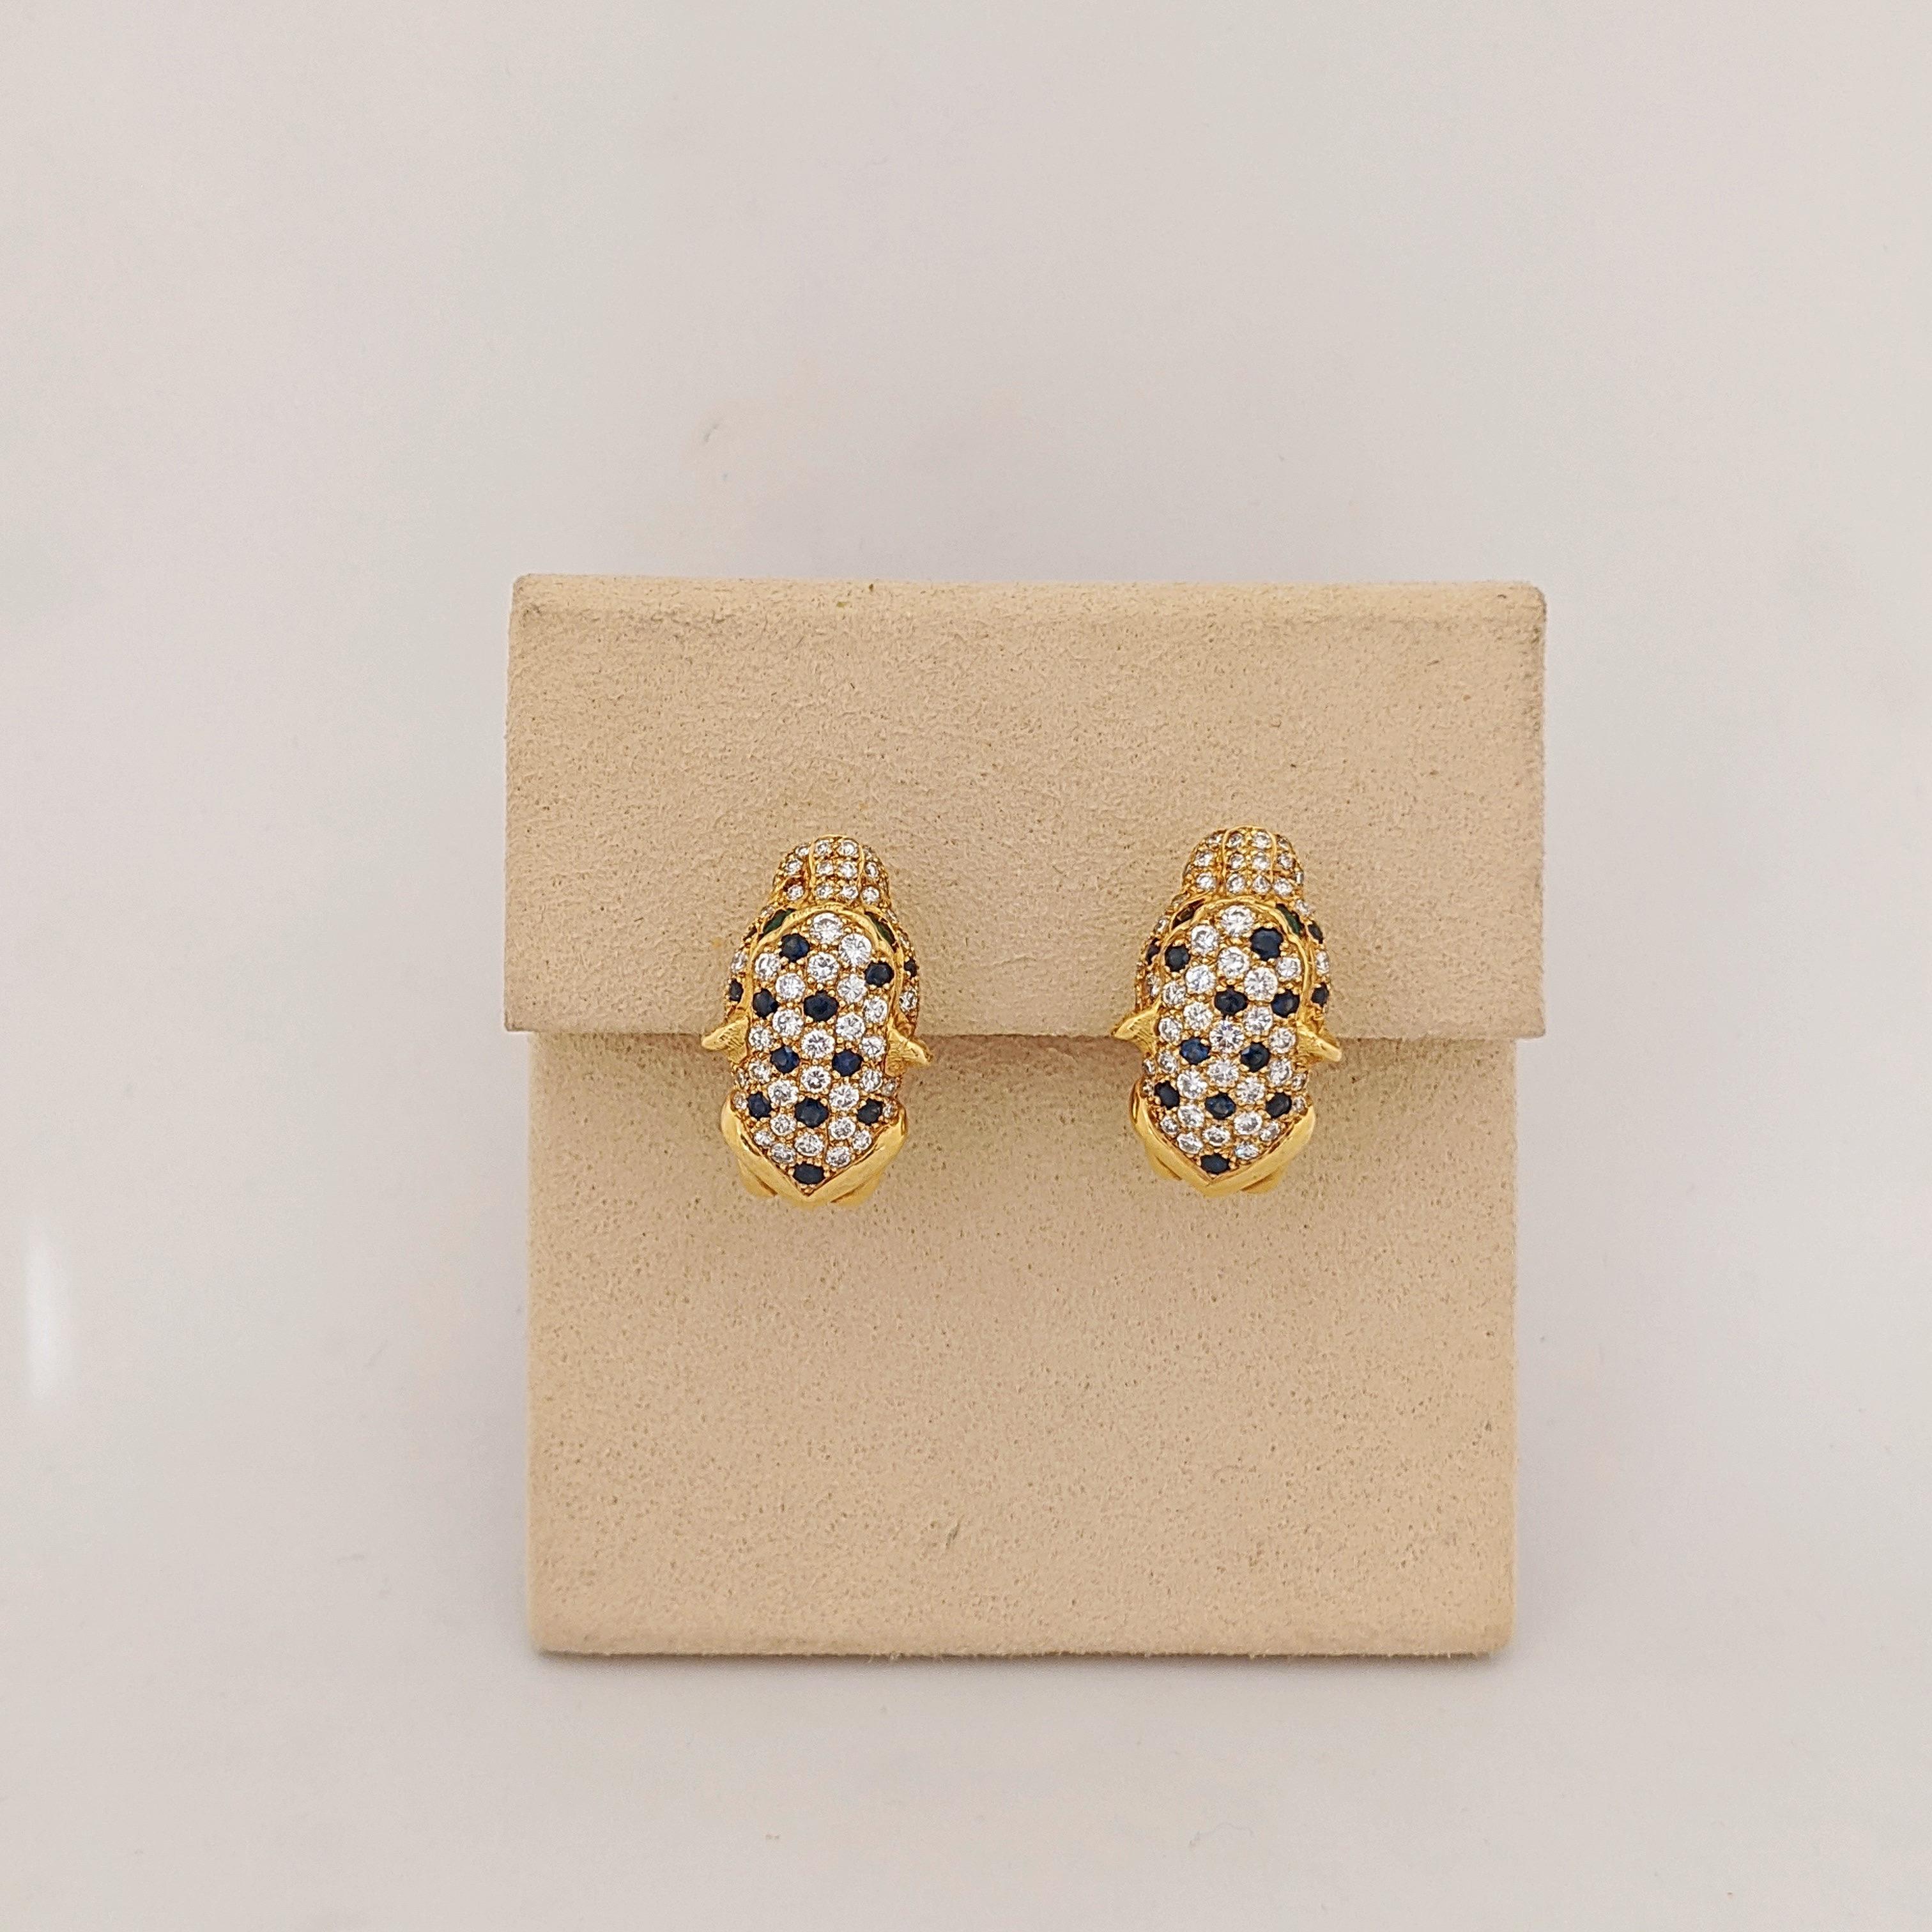 18 Karat Gelbgold Pantherkopf-Ohrringe . Die Ohrringe sind mit eingefassten Diamanten und blauen Saphiren besetzt. Die Augen des Panthers sind marquisförmige Smaragde. Die Ohrringe messen 1